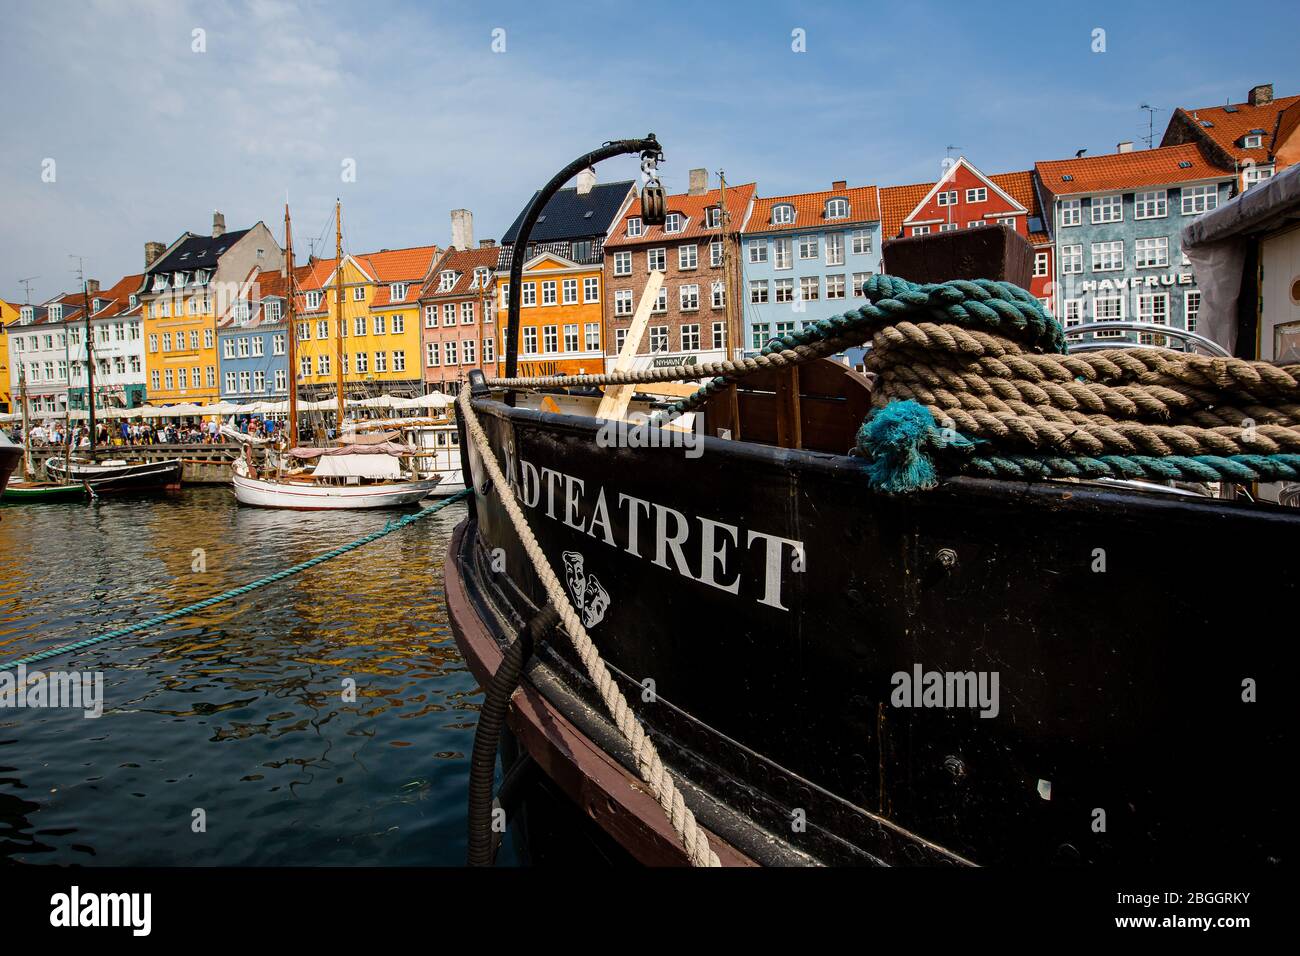 Nyhavn canal in Copenhagen, Denmark. Daylight shot Stock Photo